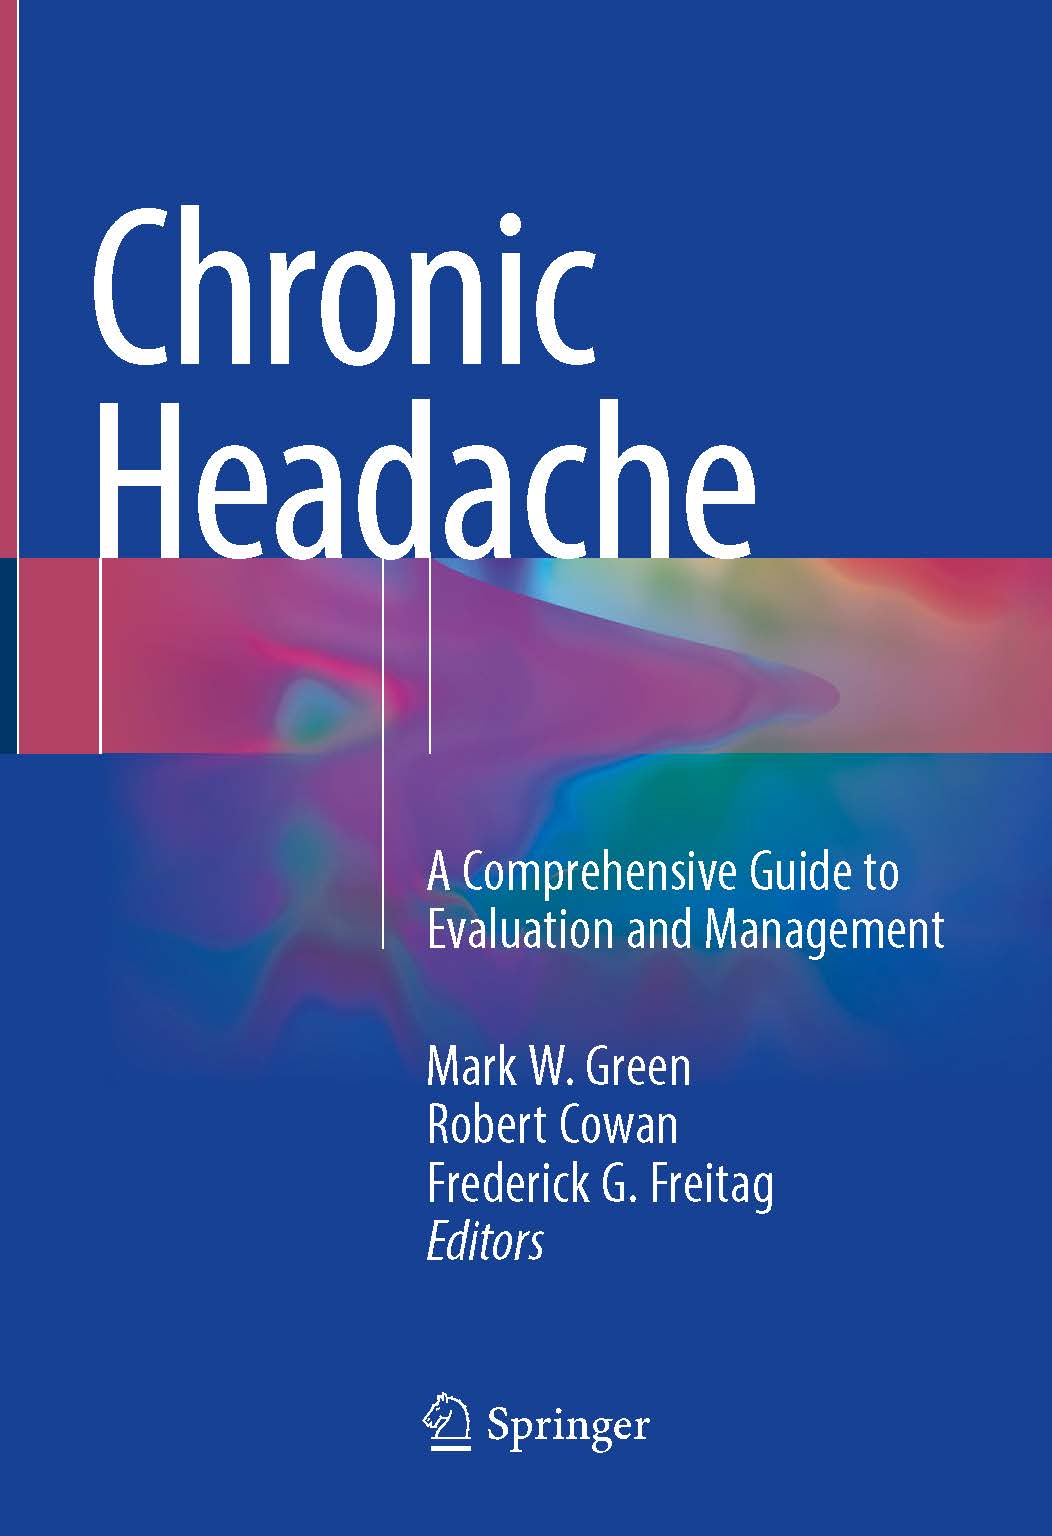 页面提取自－2019_Book_Chronic Headache.jpg